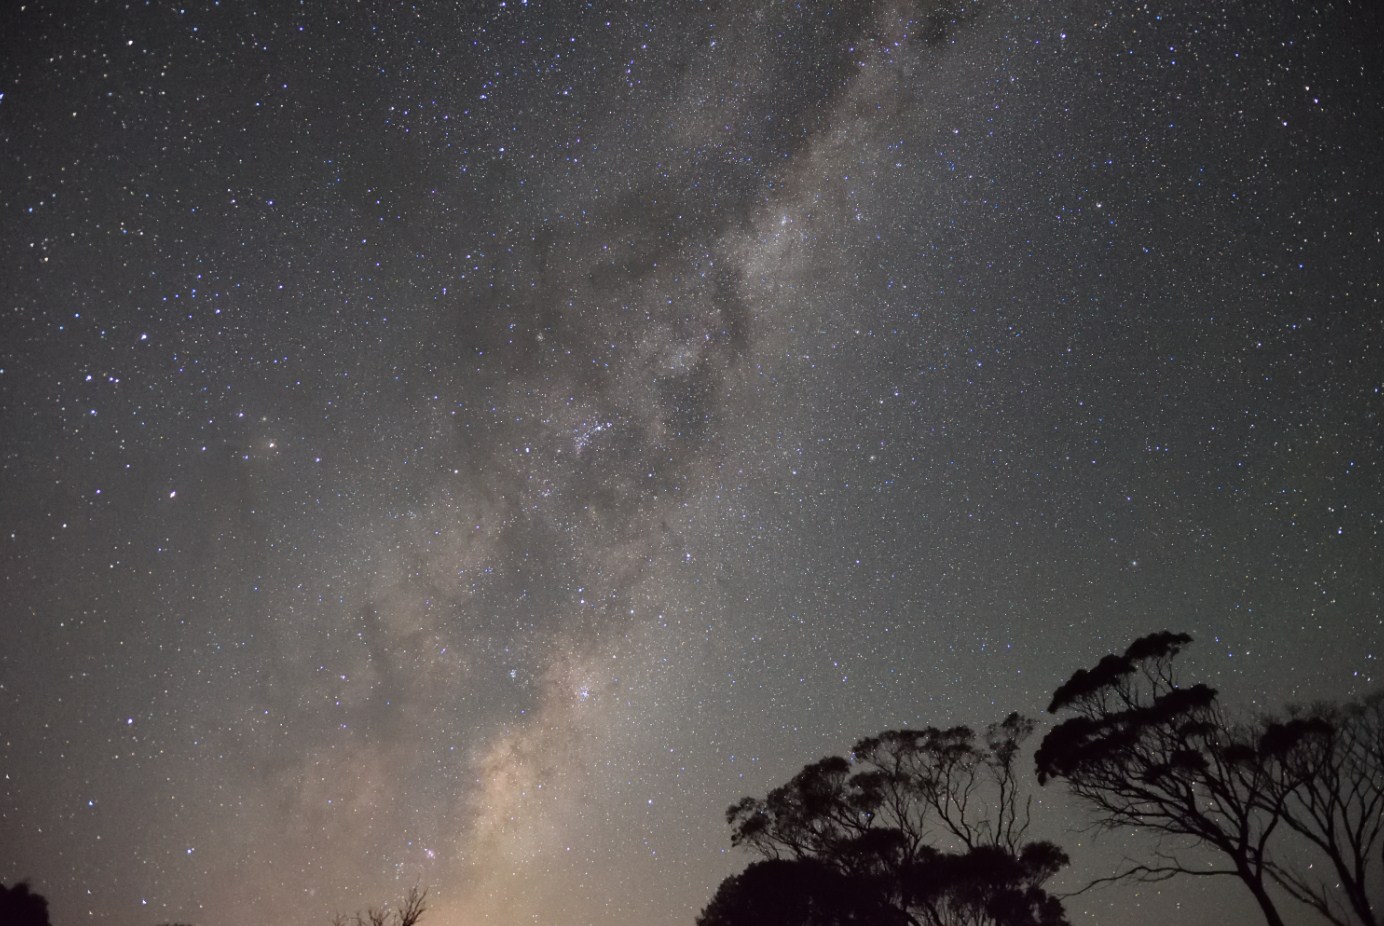 Milky Way seen in Western Australia